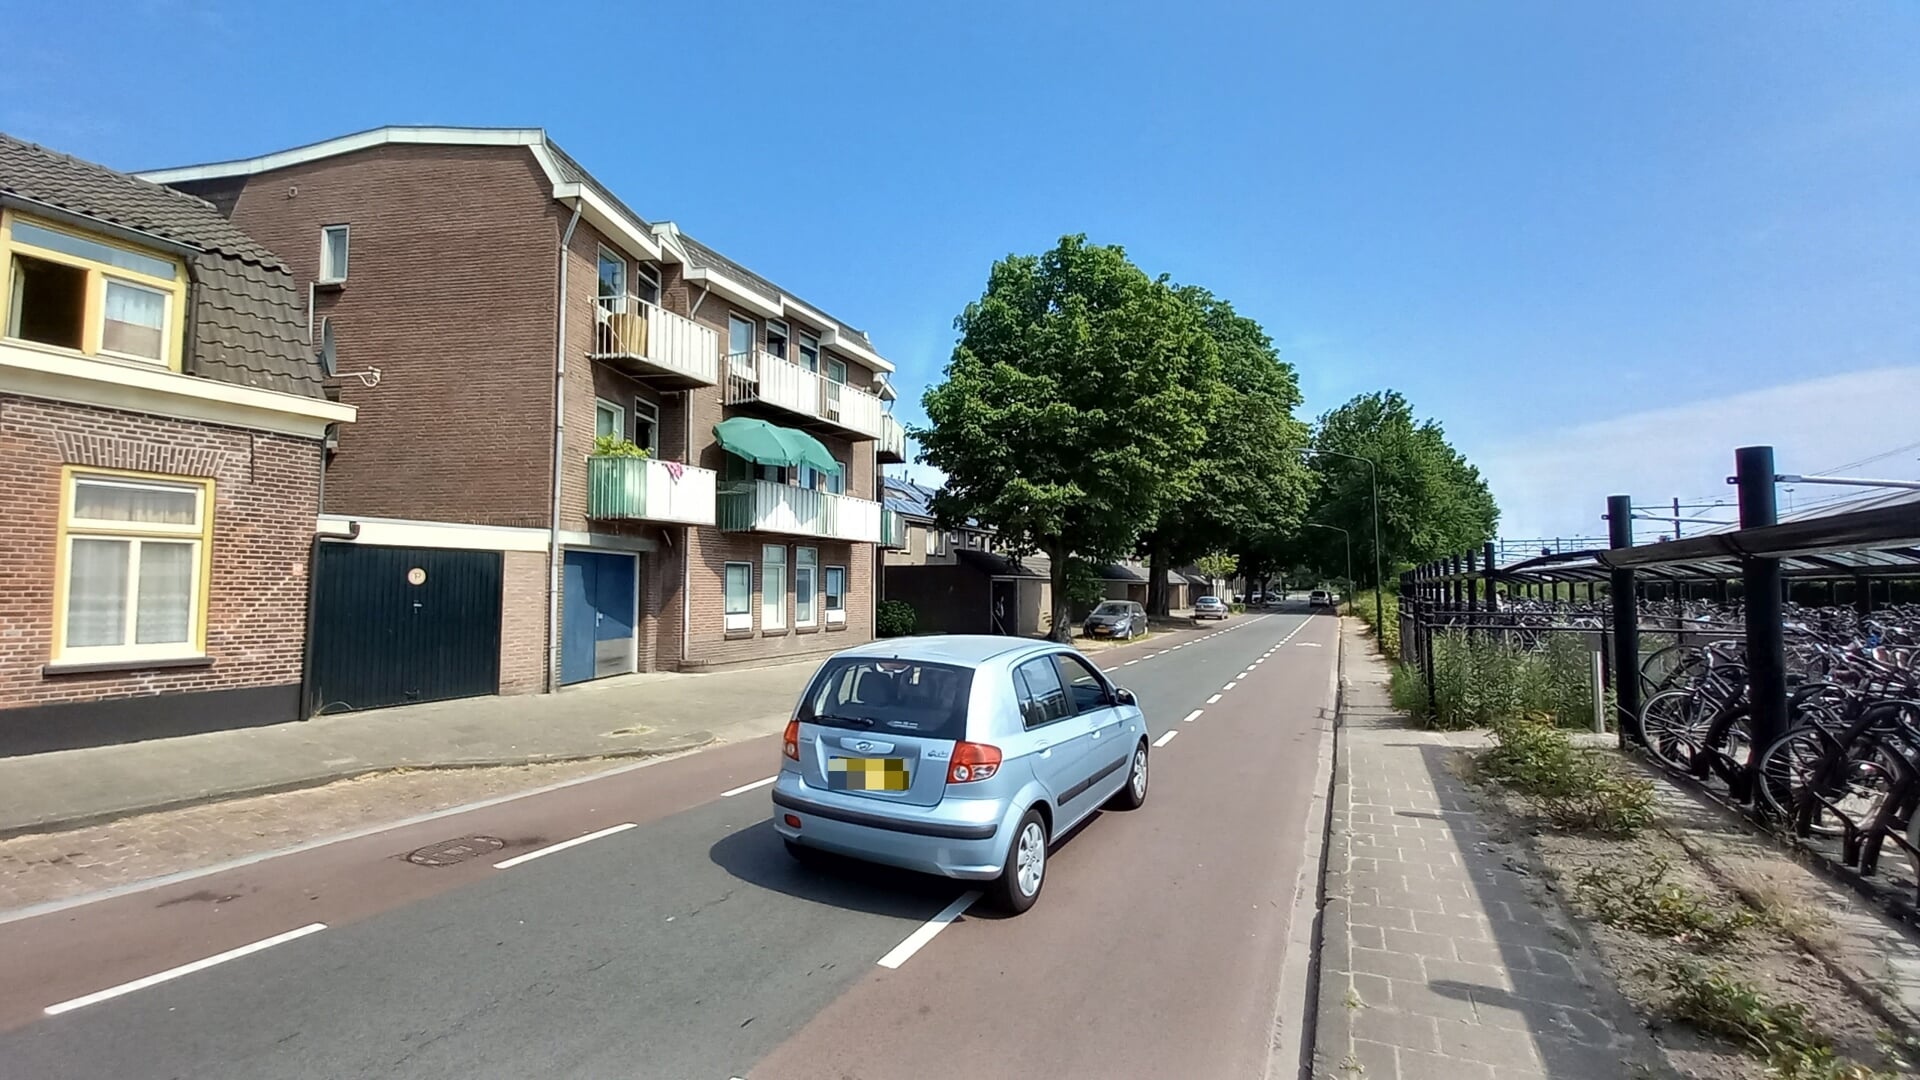 Woonstichting Joost wil het sociaal pension tussen de Van Coothstraat en Parallelweg Noord vervangen door nieuwbouw.